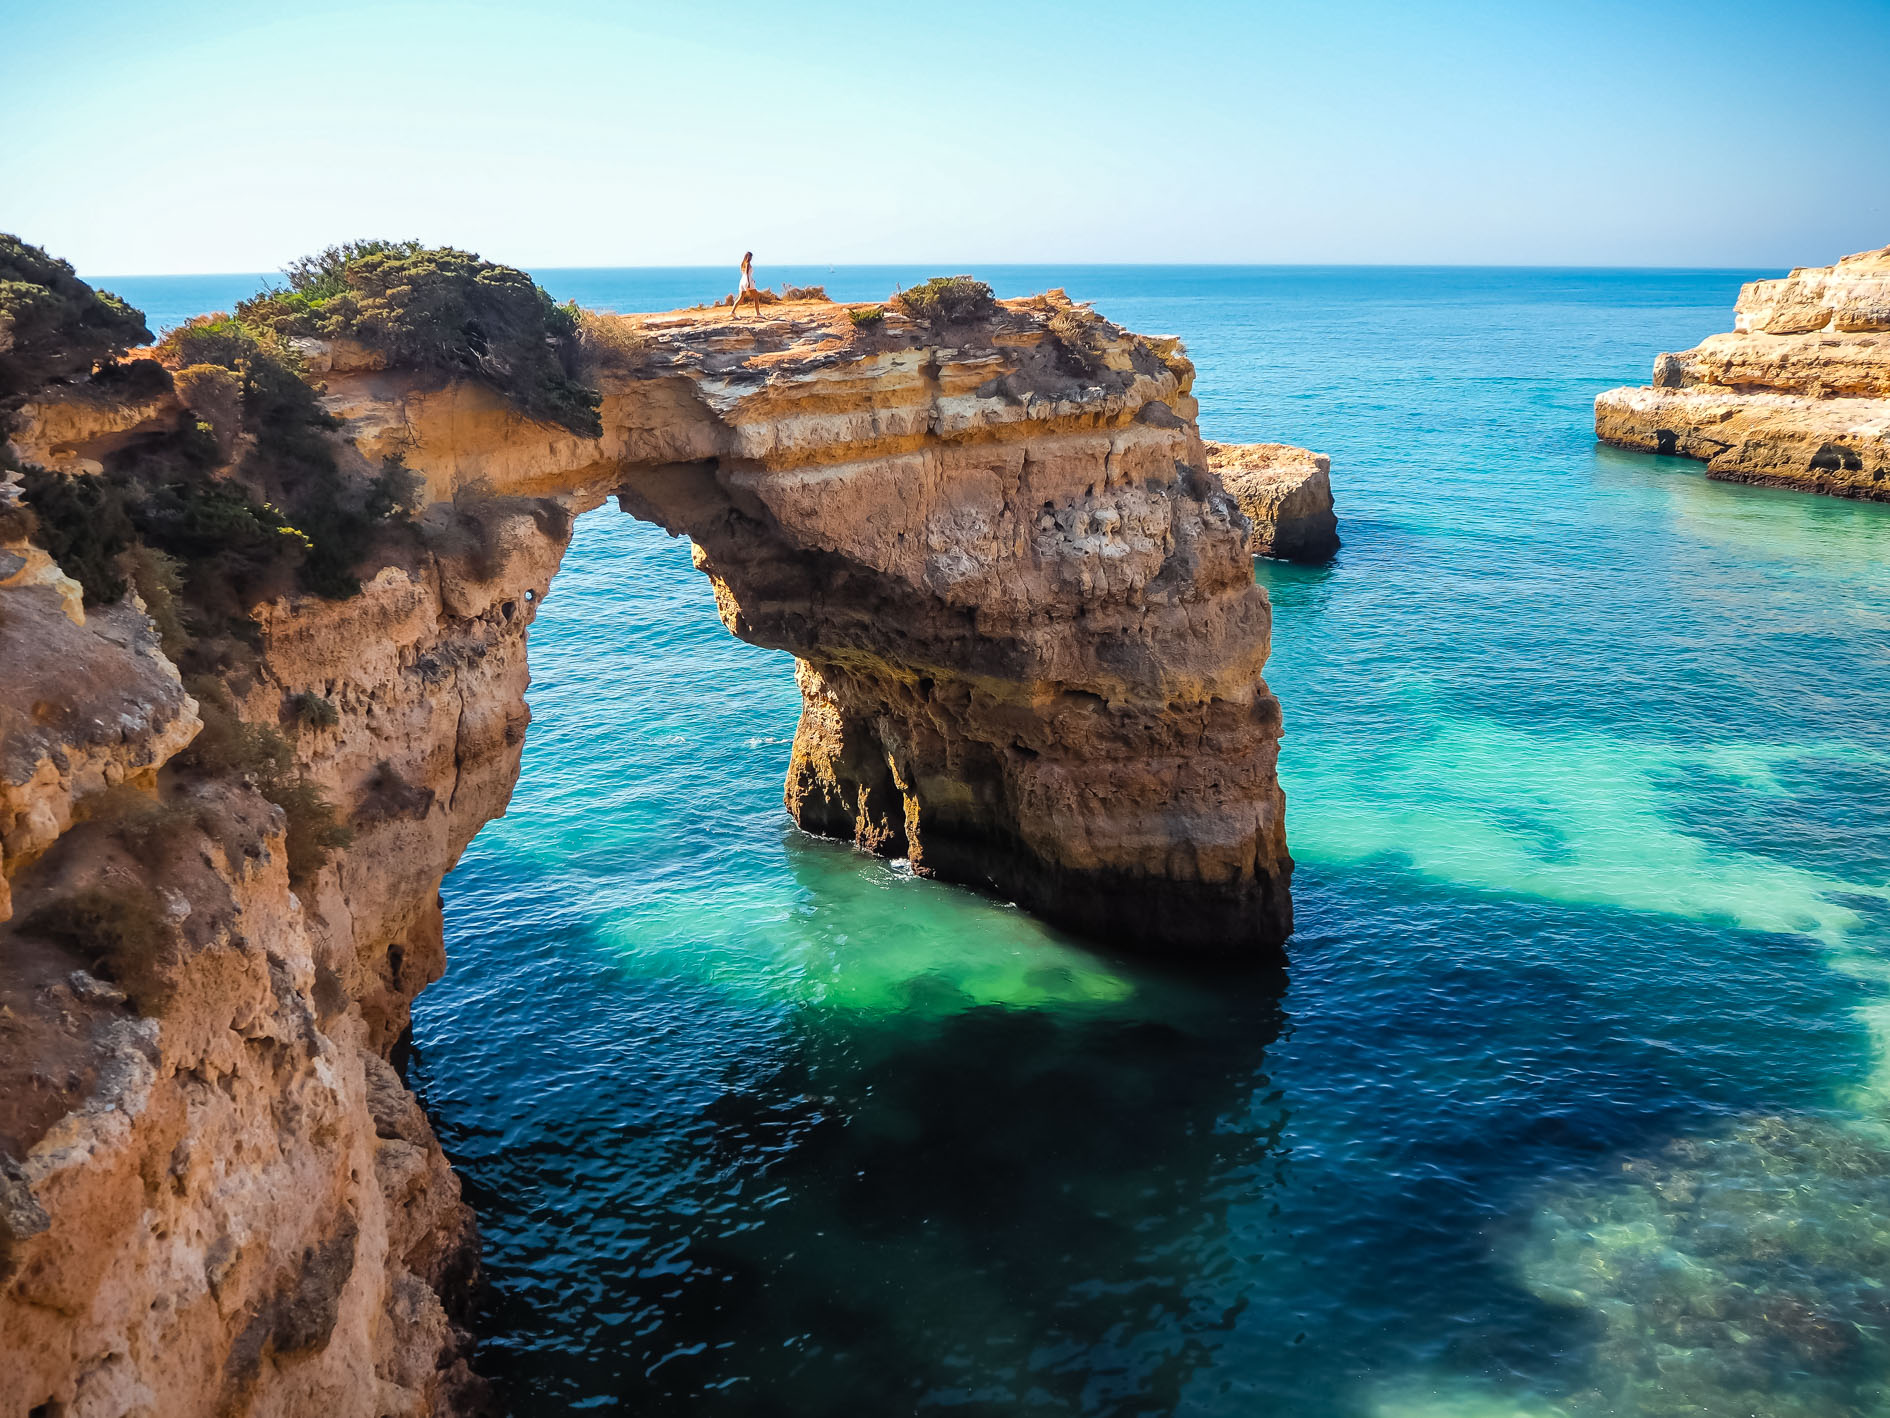 Visiter l Algarve Que faire Où dormir Le guide pratique pour des vacances réussies On